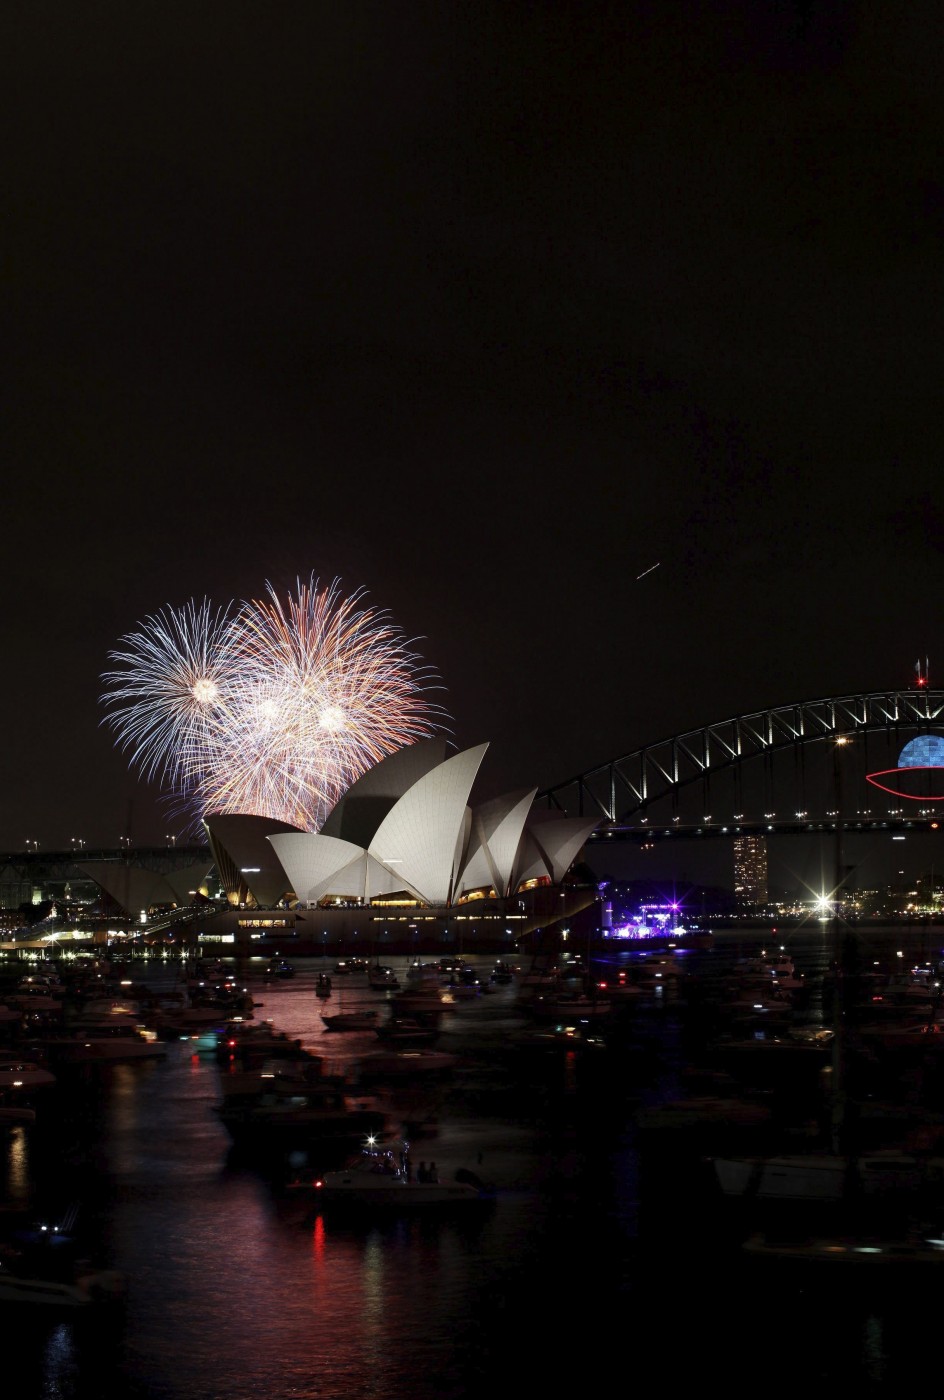 بالصور تغطية احتفالات العالم بالسنة الجديدة 2014 , صور جديدة من احتفالات دول العالم بسنة 2014